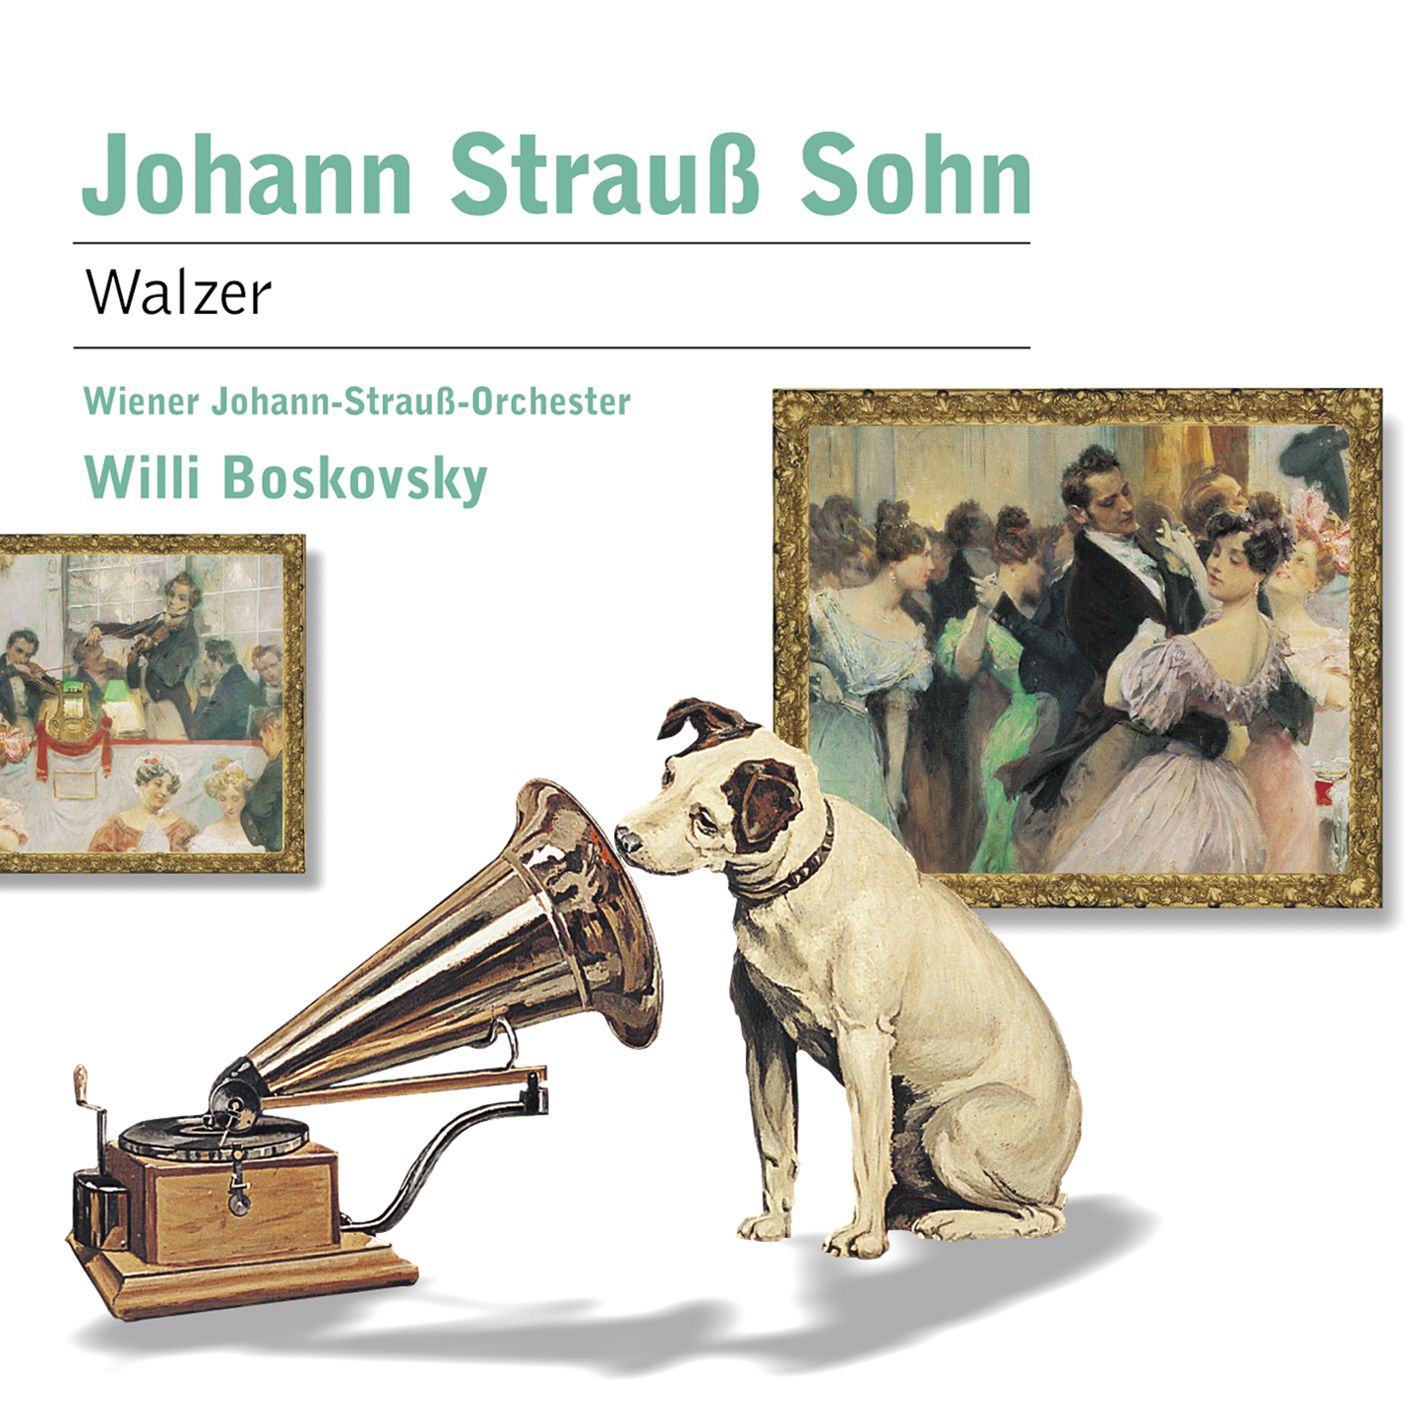 Strauss II: Walzer